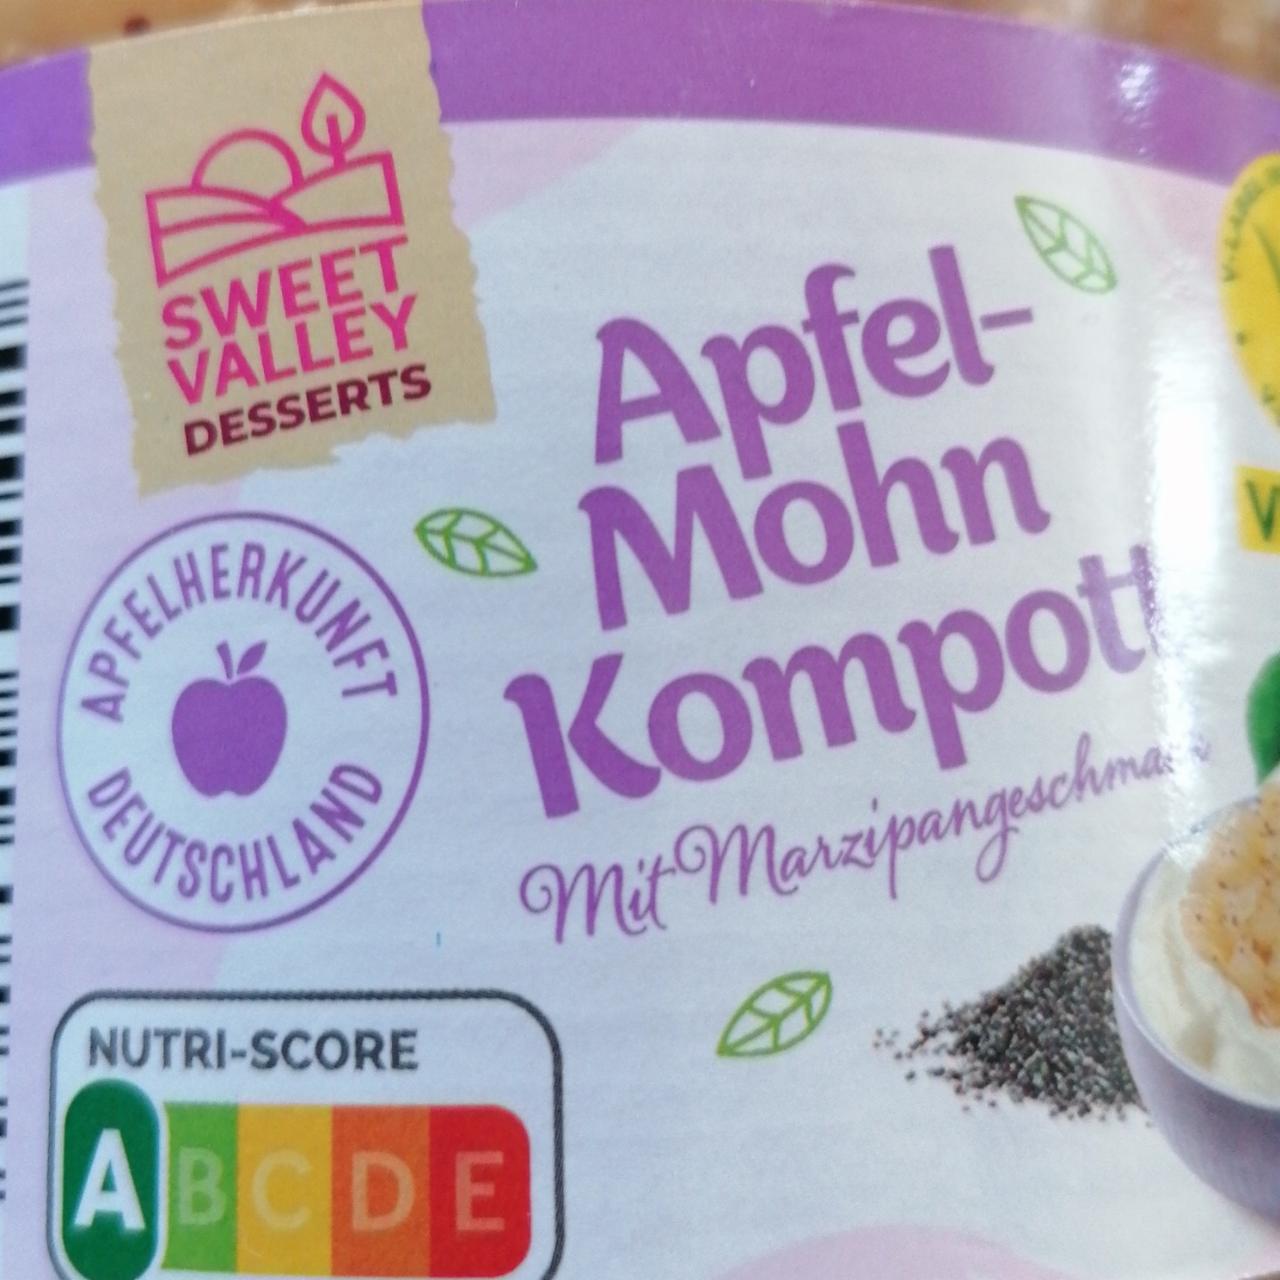 Fotografie - Apfel - Mohn Kompott mit Marzipangeschmack Sweet valley